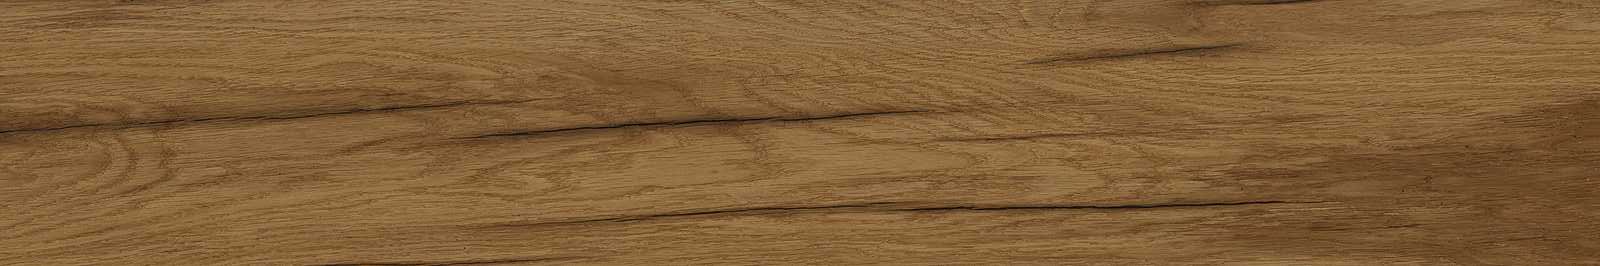 MARAZZI TREVERKLIFE CHERRY MQYN 20x120 cm dlažba imitácia dreva -15%